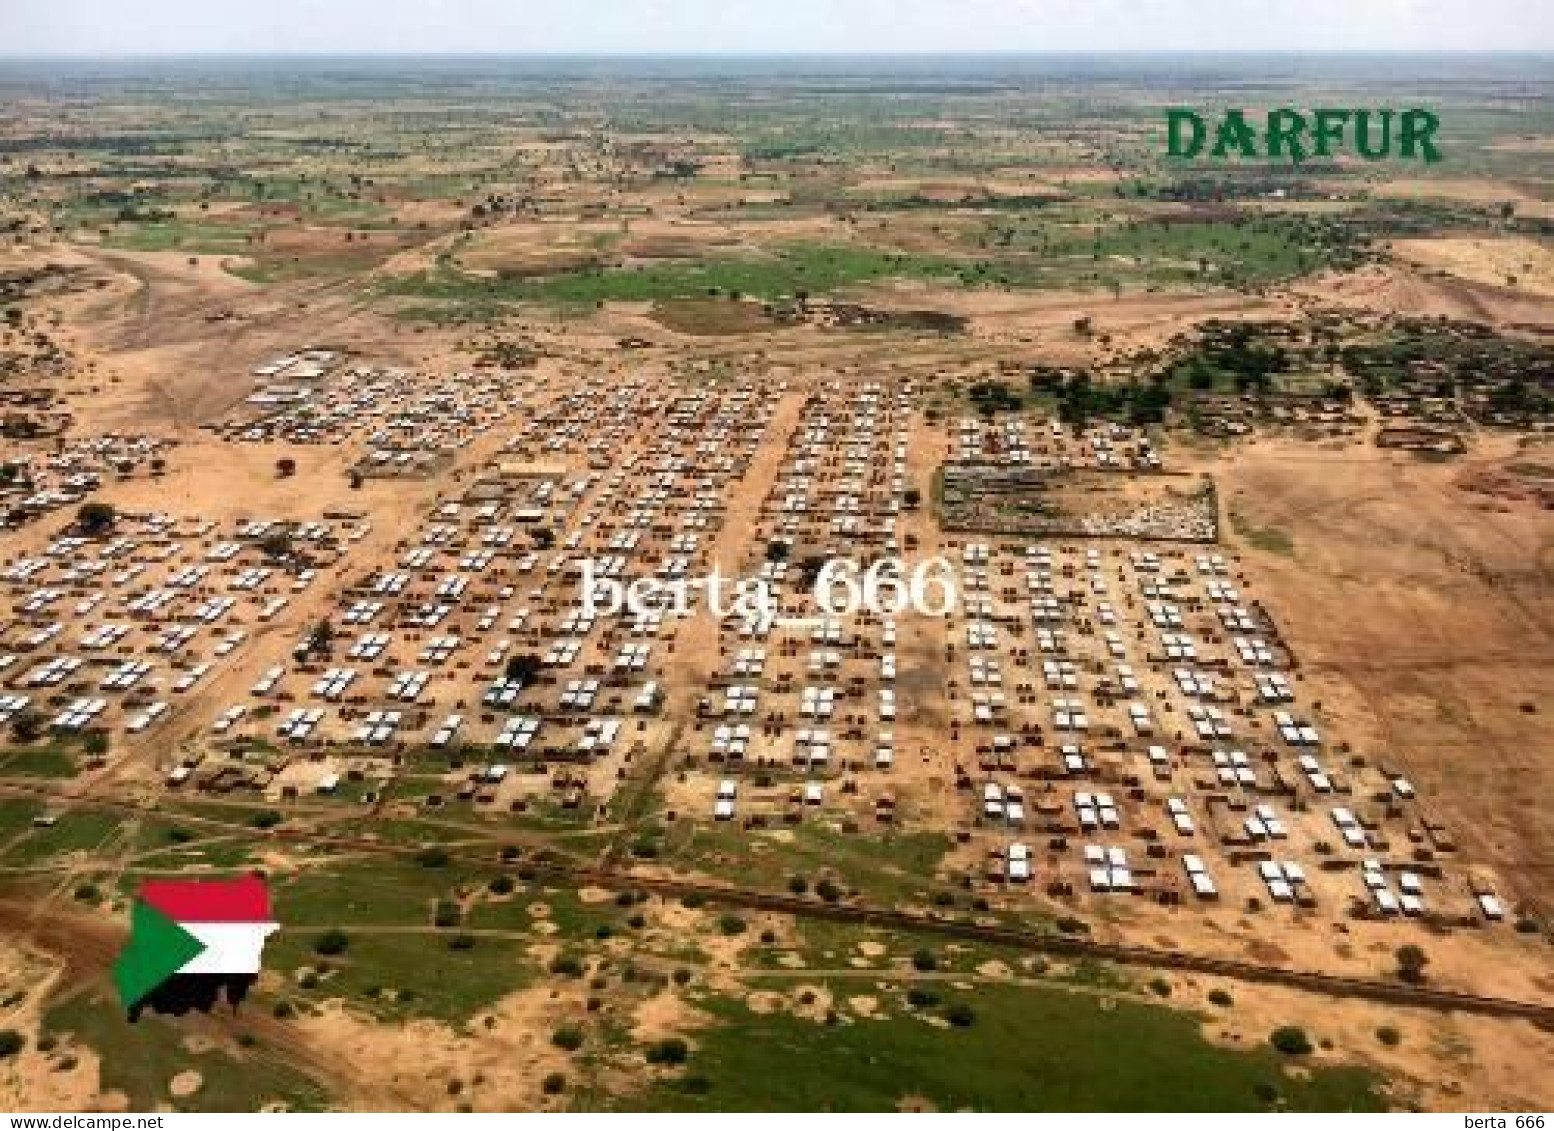 Sudan Darfur Aerial View New Postcard - Soudan